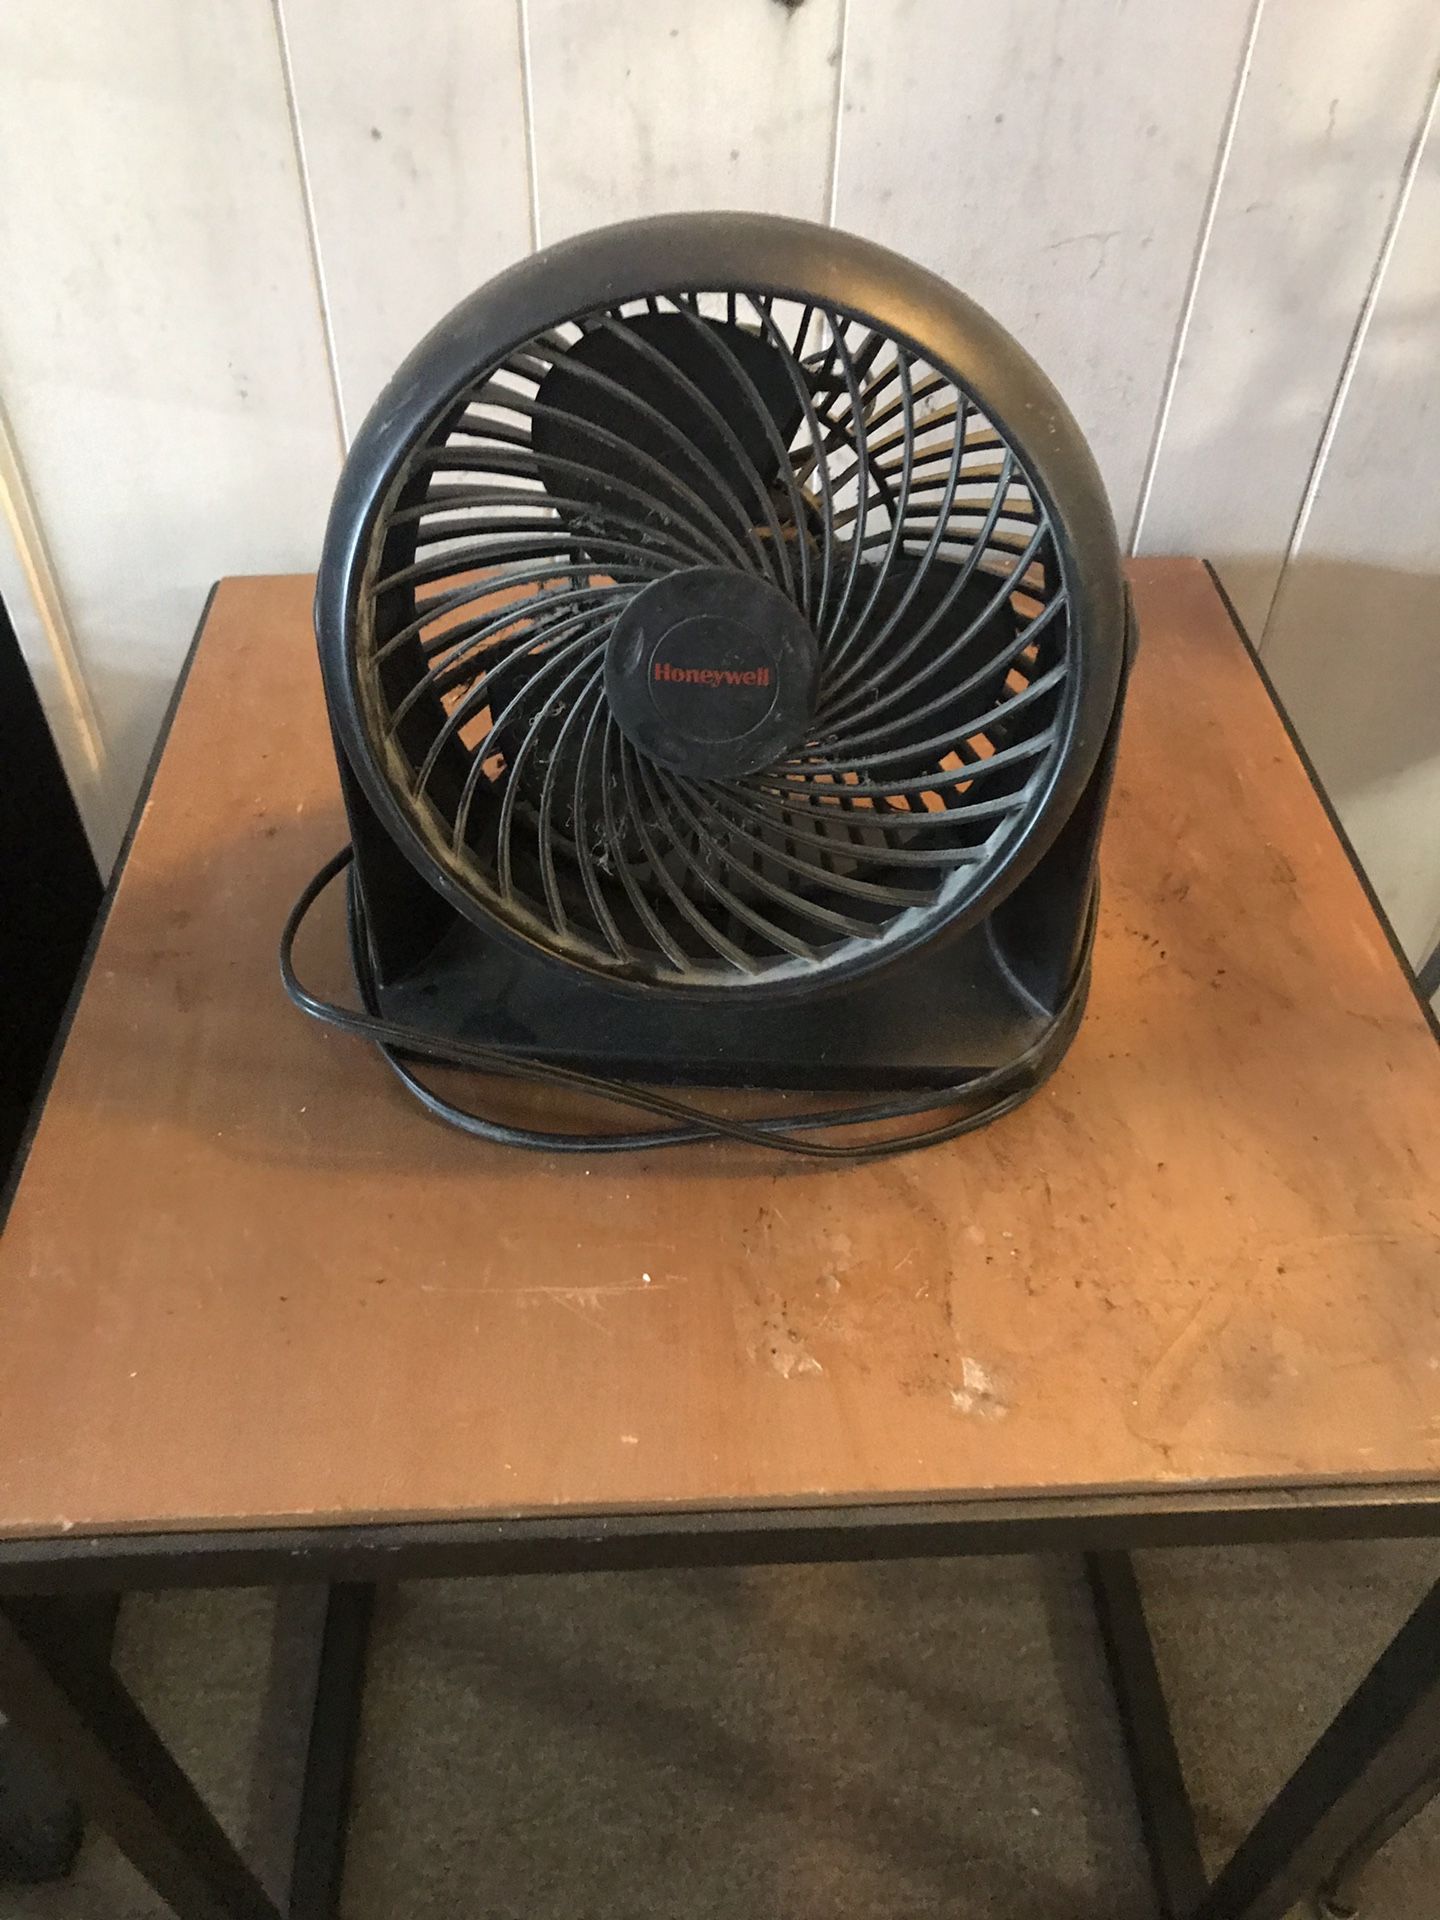 Small black fan